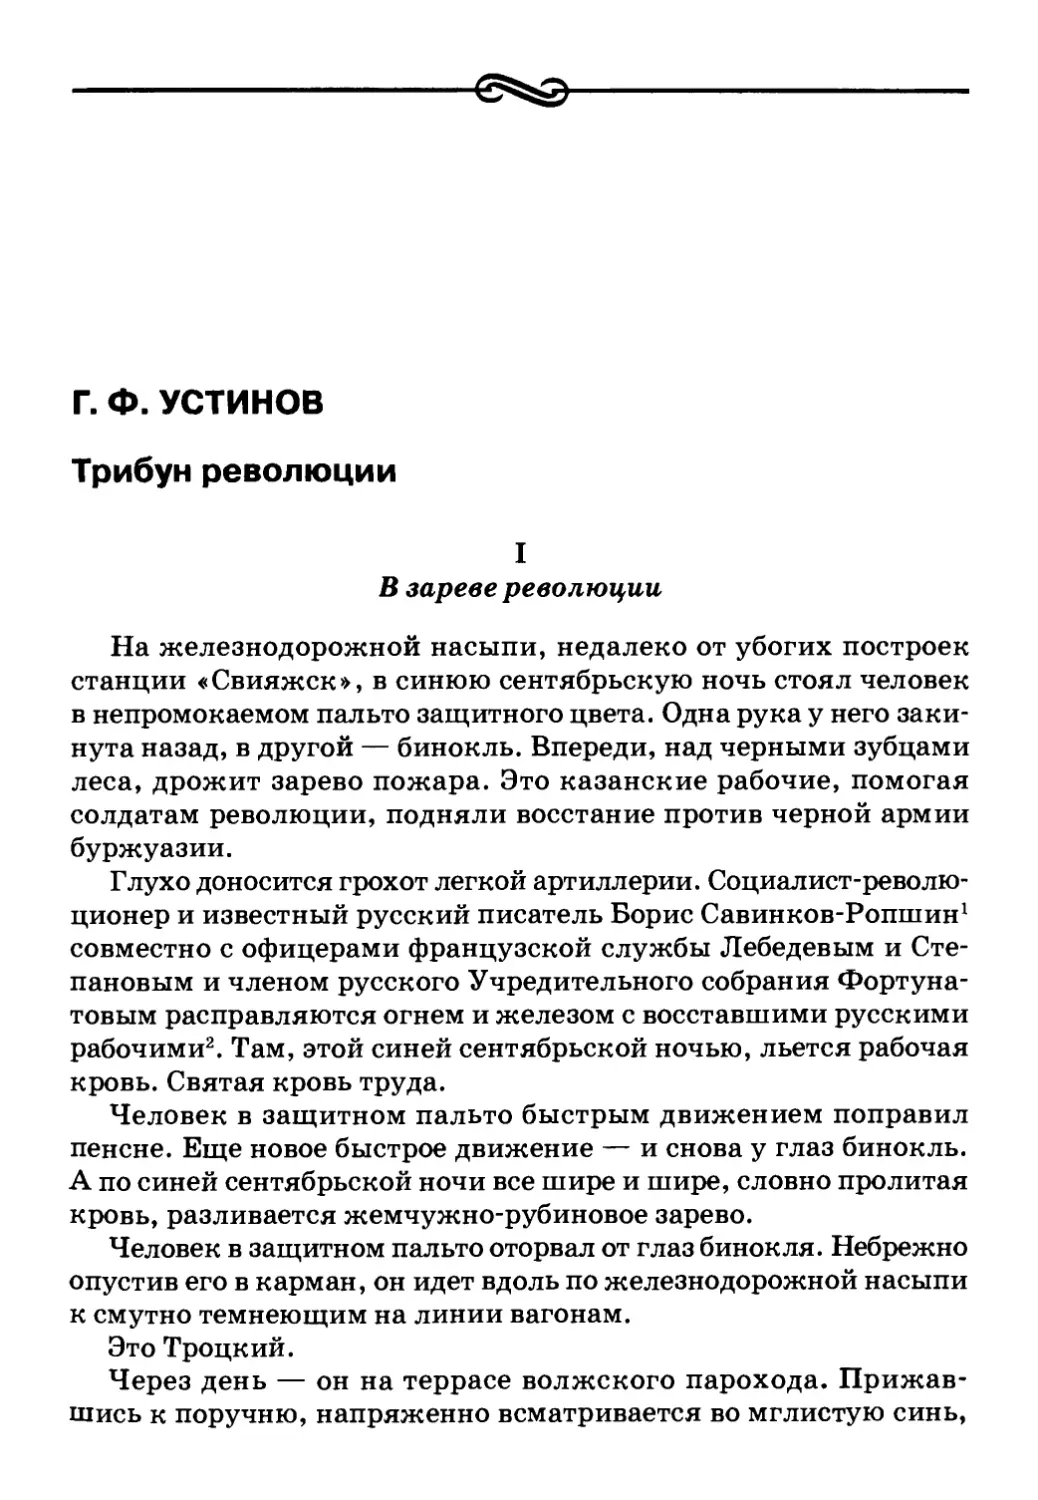 Г. Ф. Устинов. Трибун революции